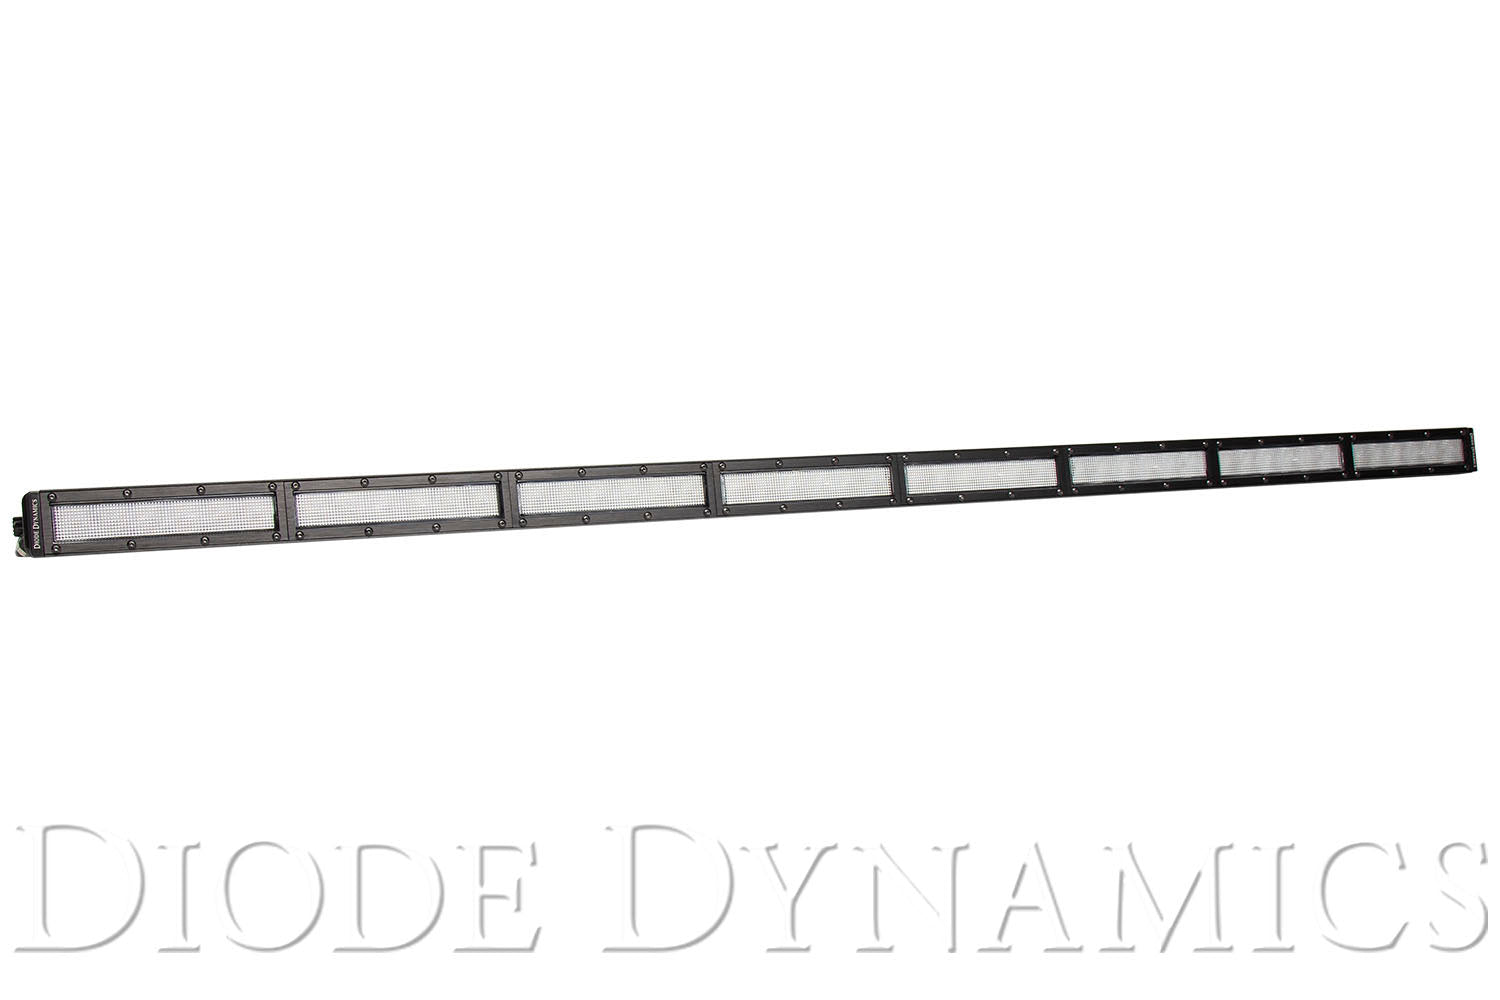 50 Inch LED Light Bar White Flood Diode Dynamics